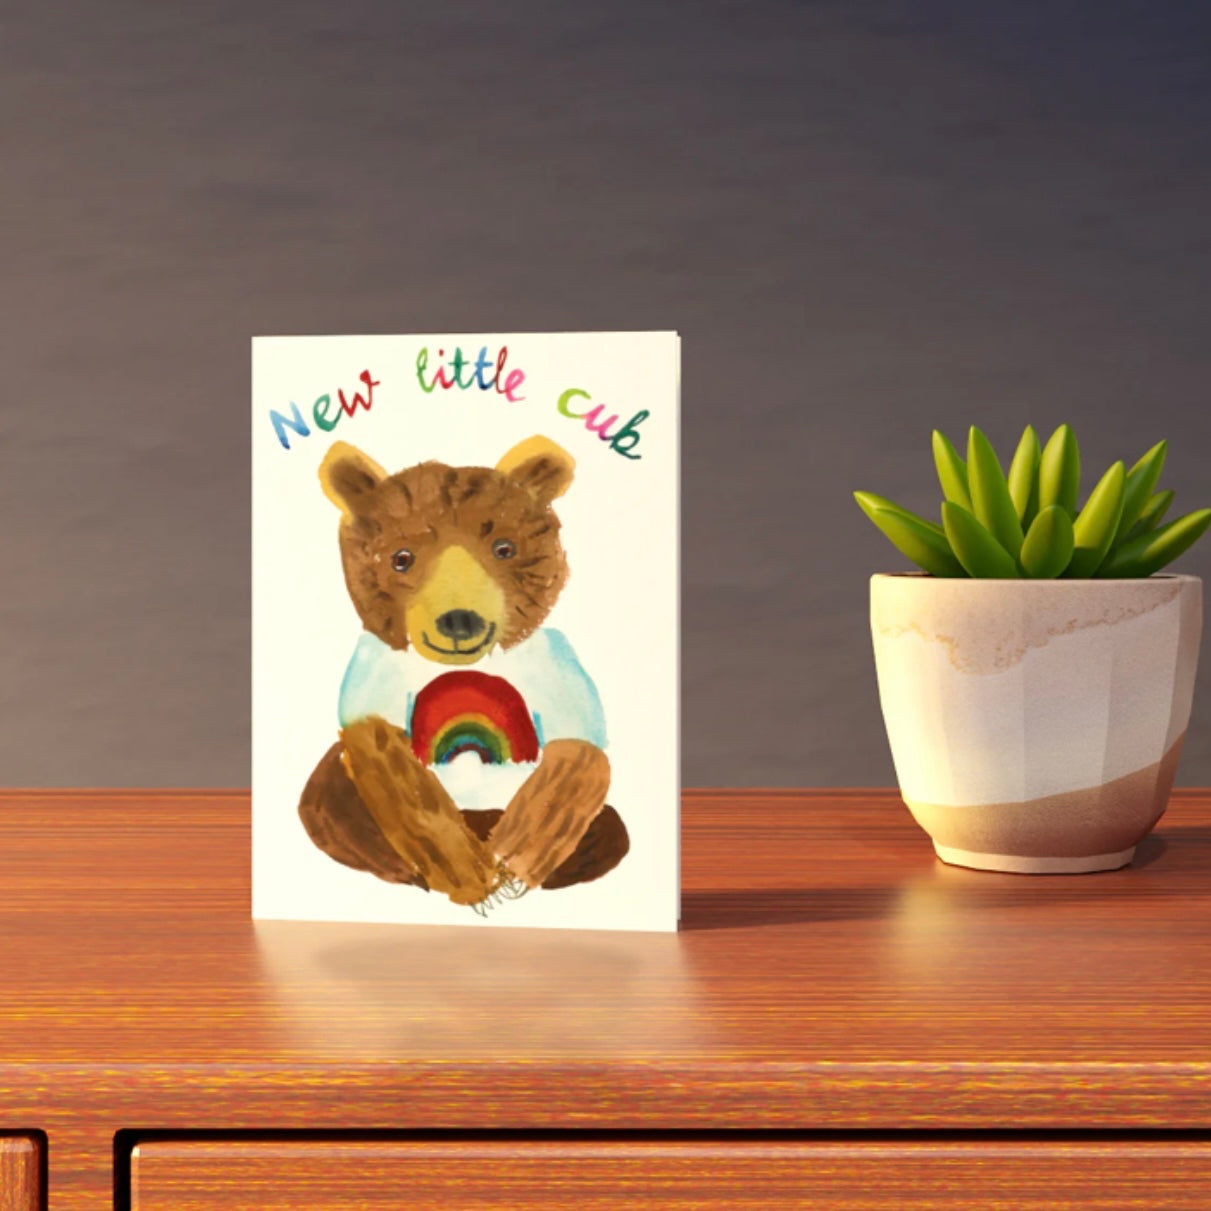 New Little Cub Rainbow Card